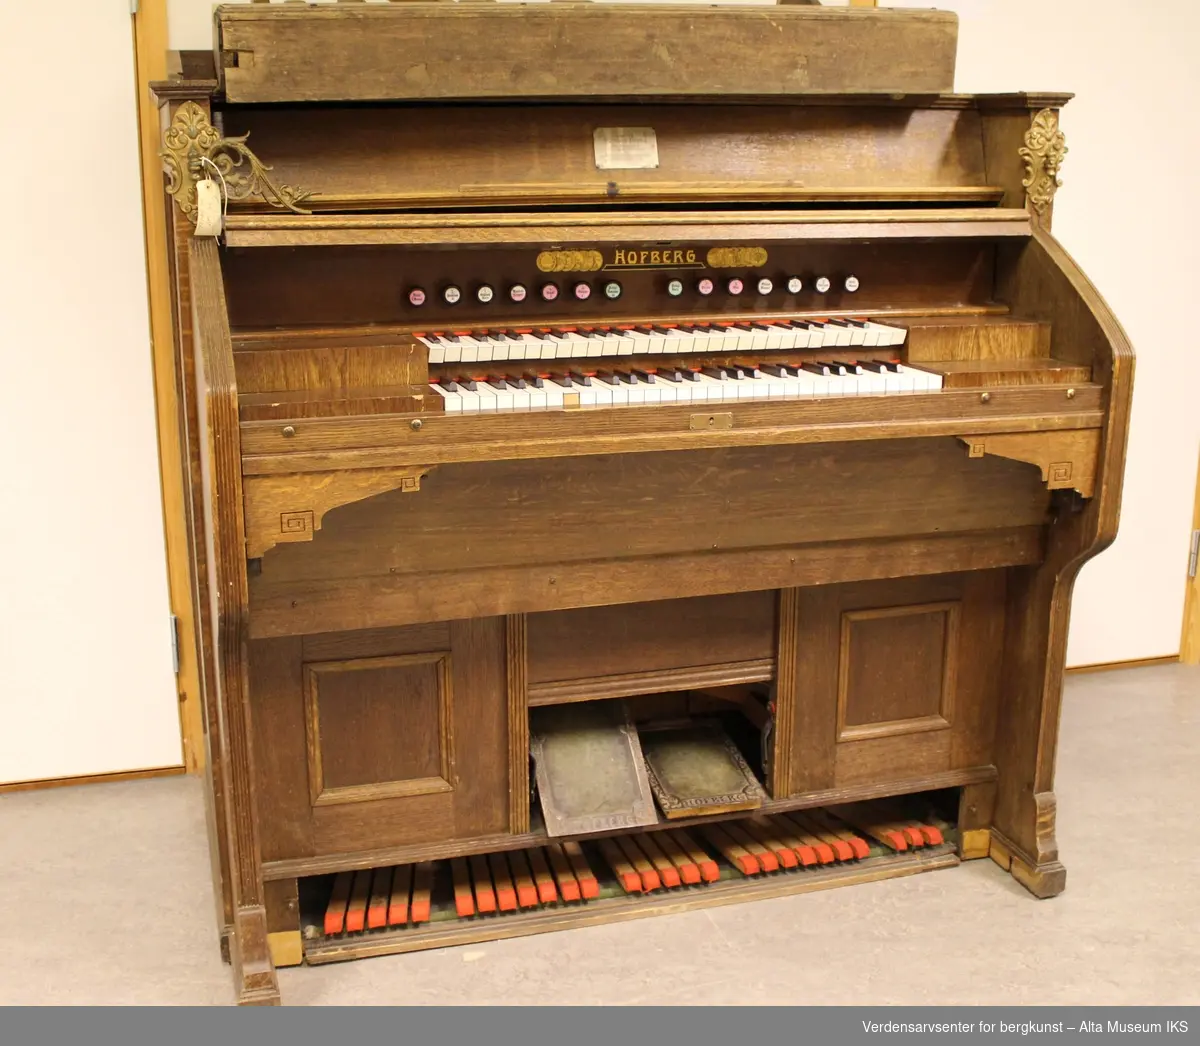 Form: A) Orgelkasse med 2 manualer og B) Separat pedalklaviatur for bassstemmer
